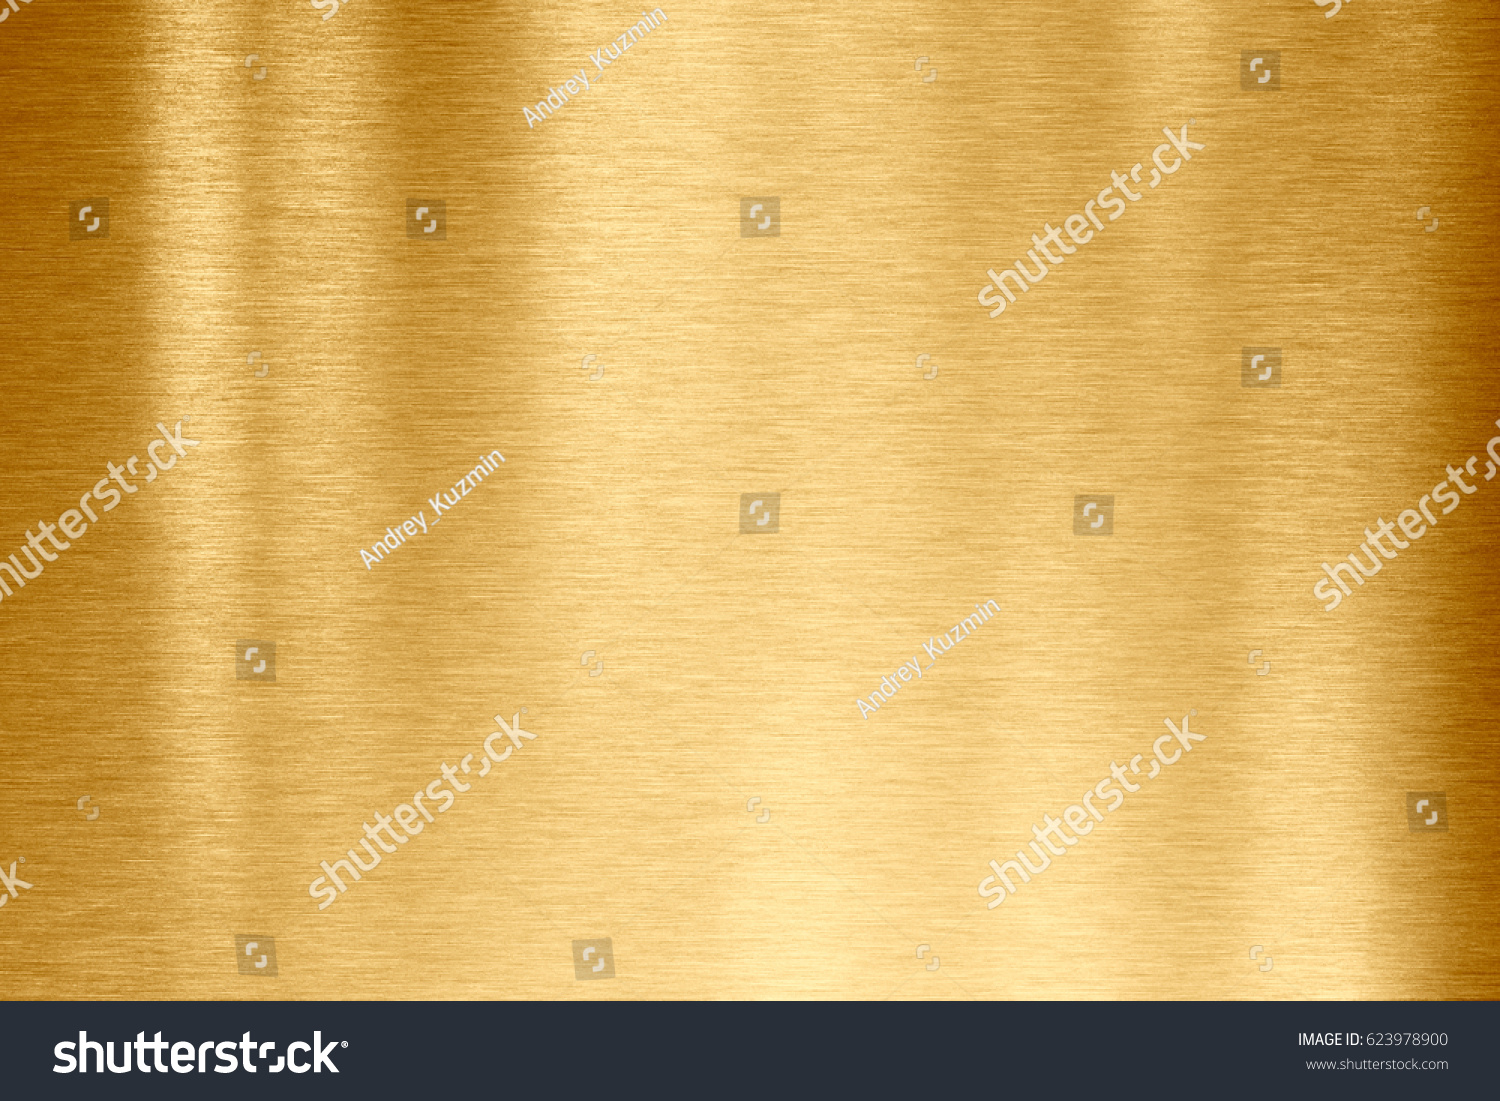 gold metal texture #623978900